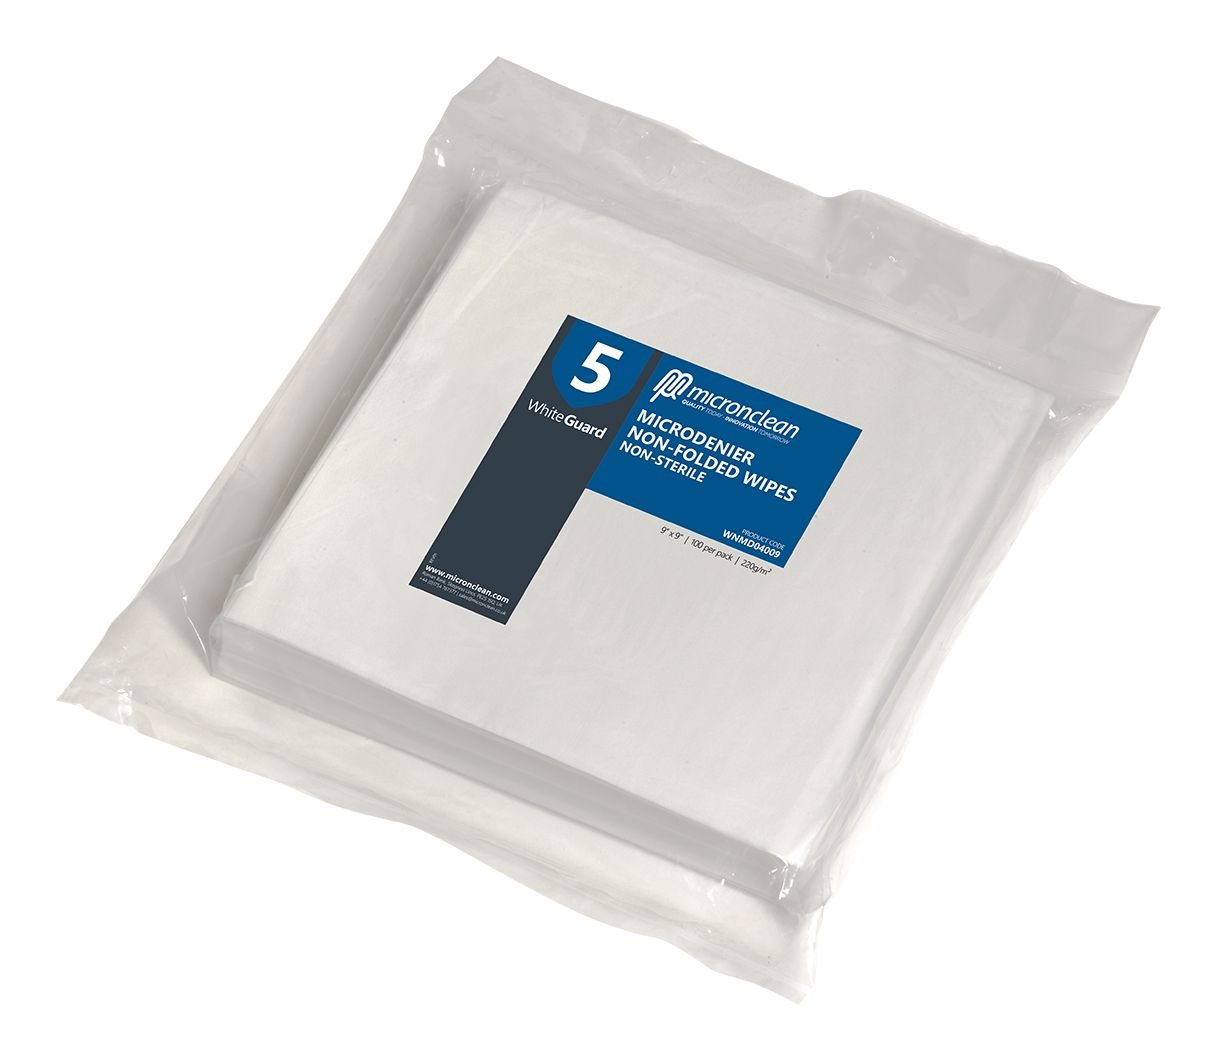 WhiteGuard 5 Microdenier Wipes Non-sterile [EU]